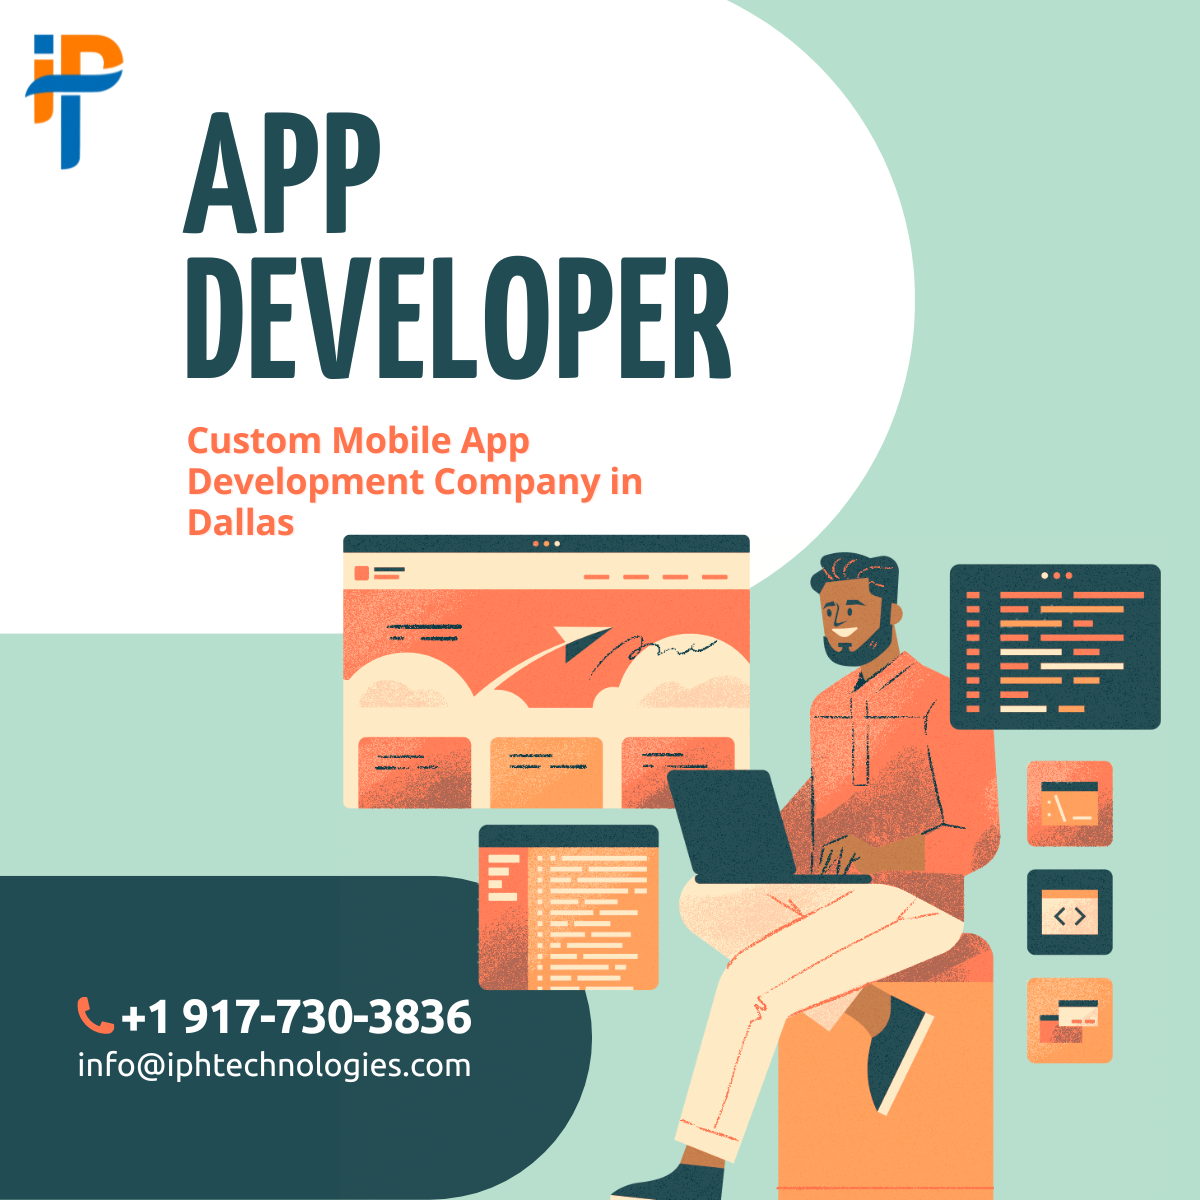 Leading Custom Mobile App Development Company in Dallas